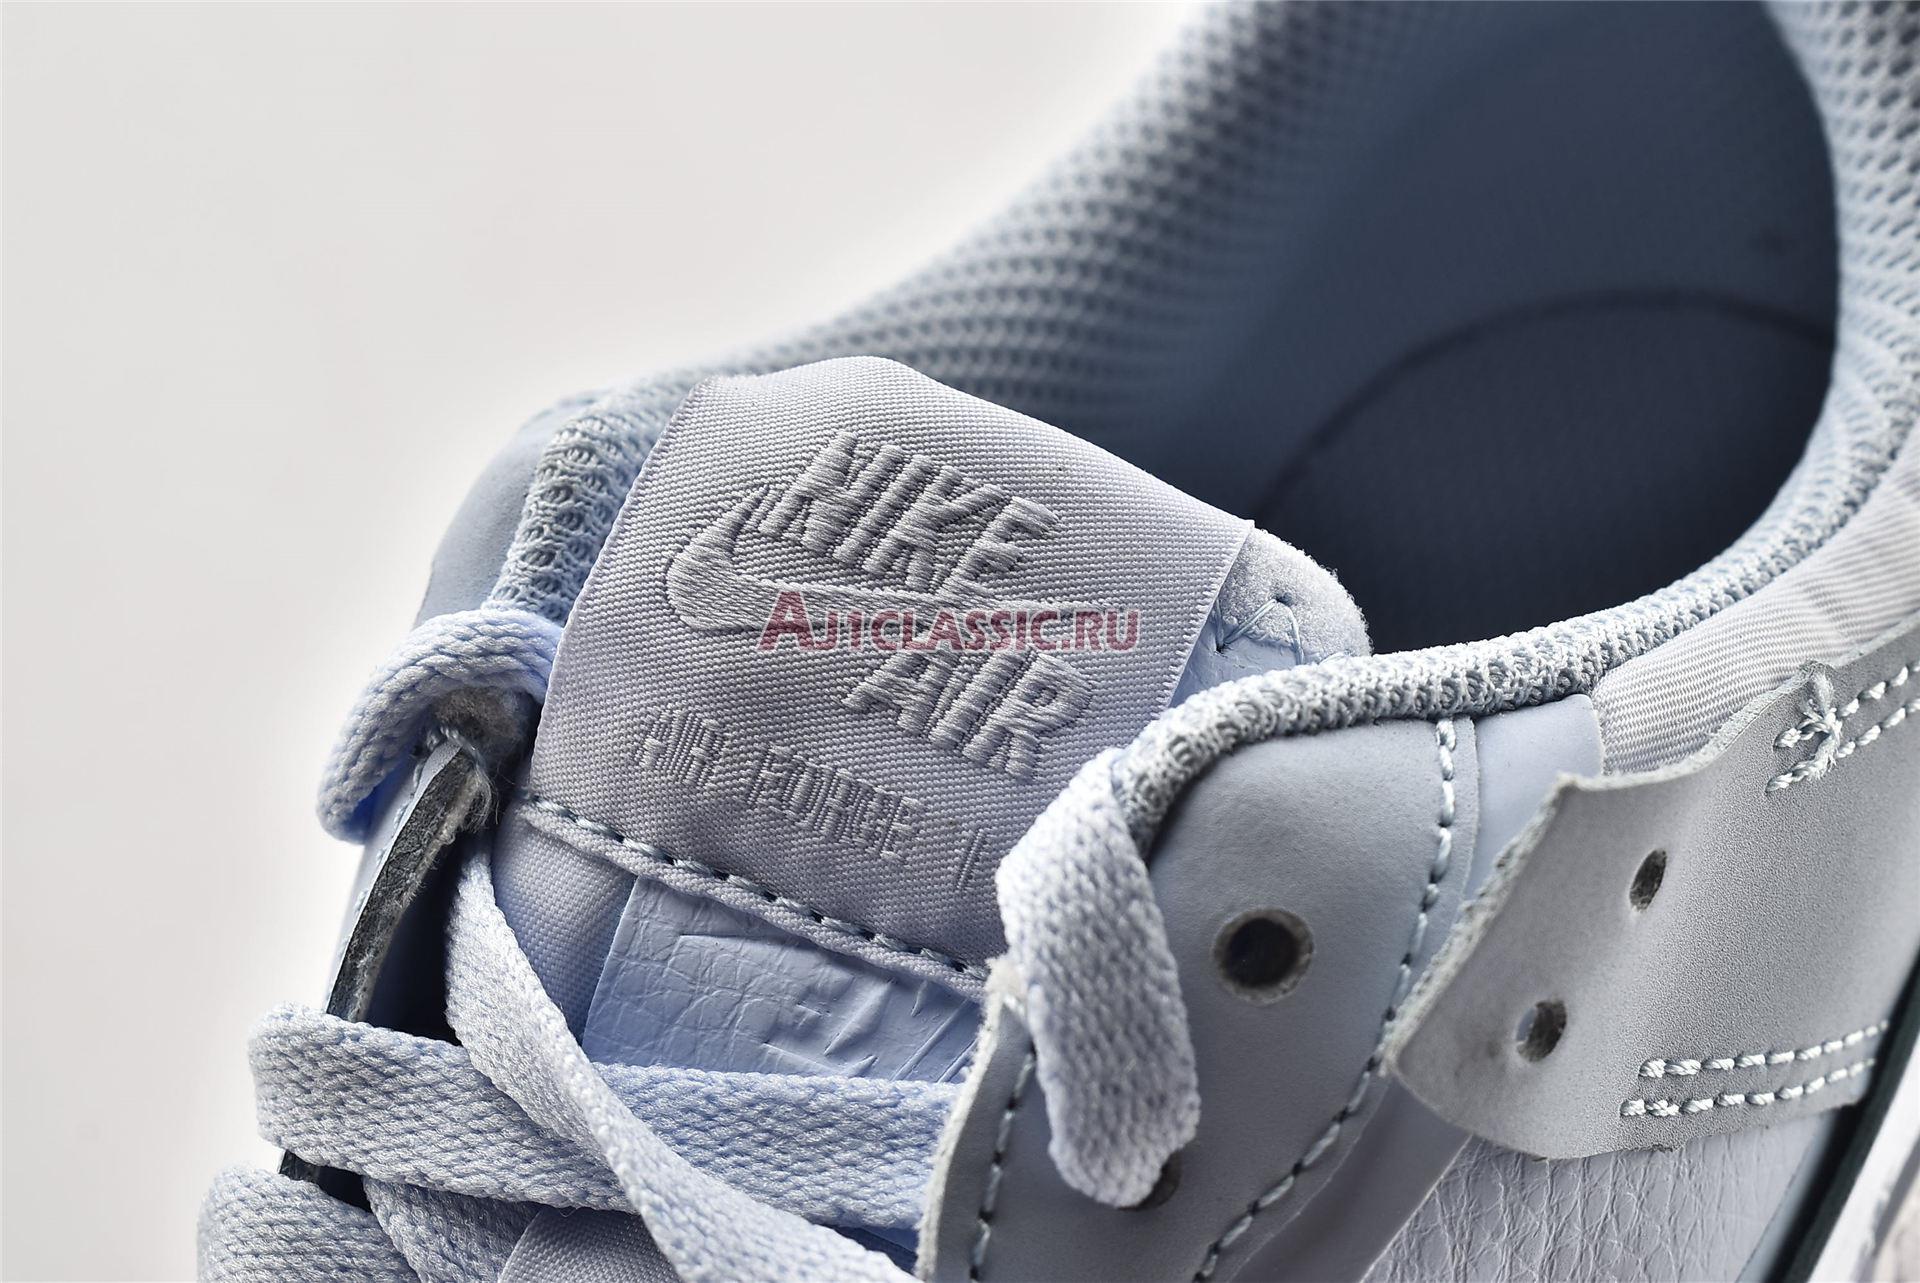 Nike Wmns Air Force 1 Shadow "Hydrogen Blue" CV3020-400